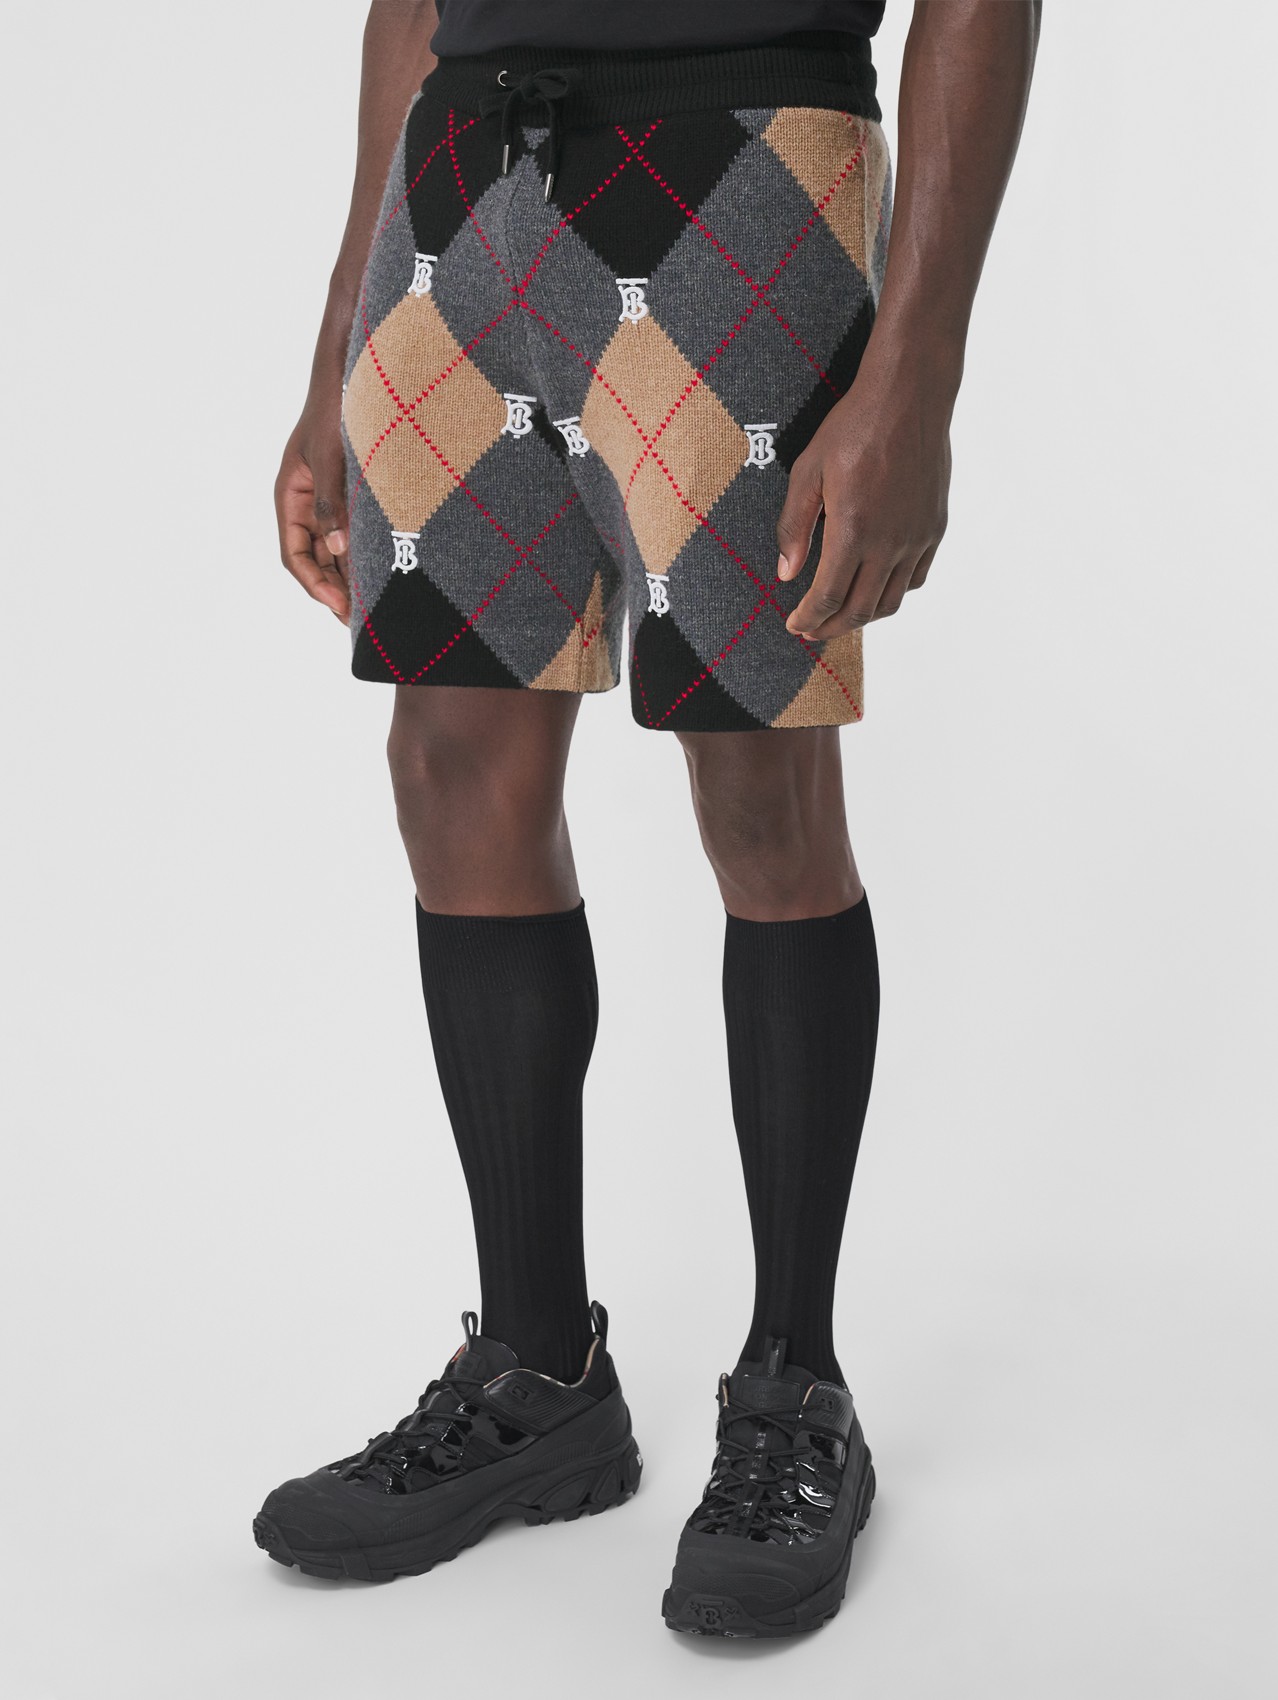 Pantalones cortos en lana y cachemir con rombos y monogramas (Cámel)